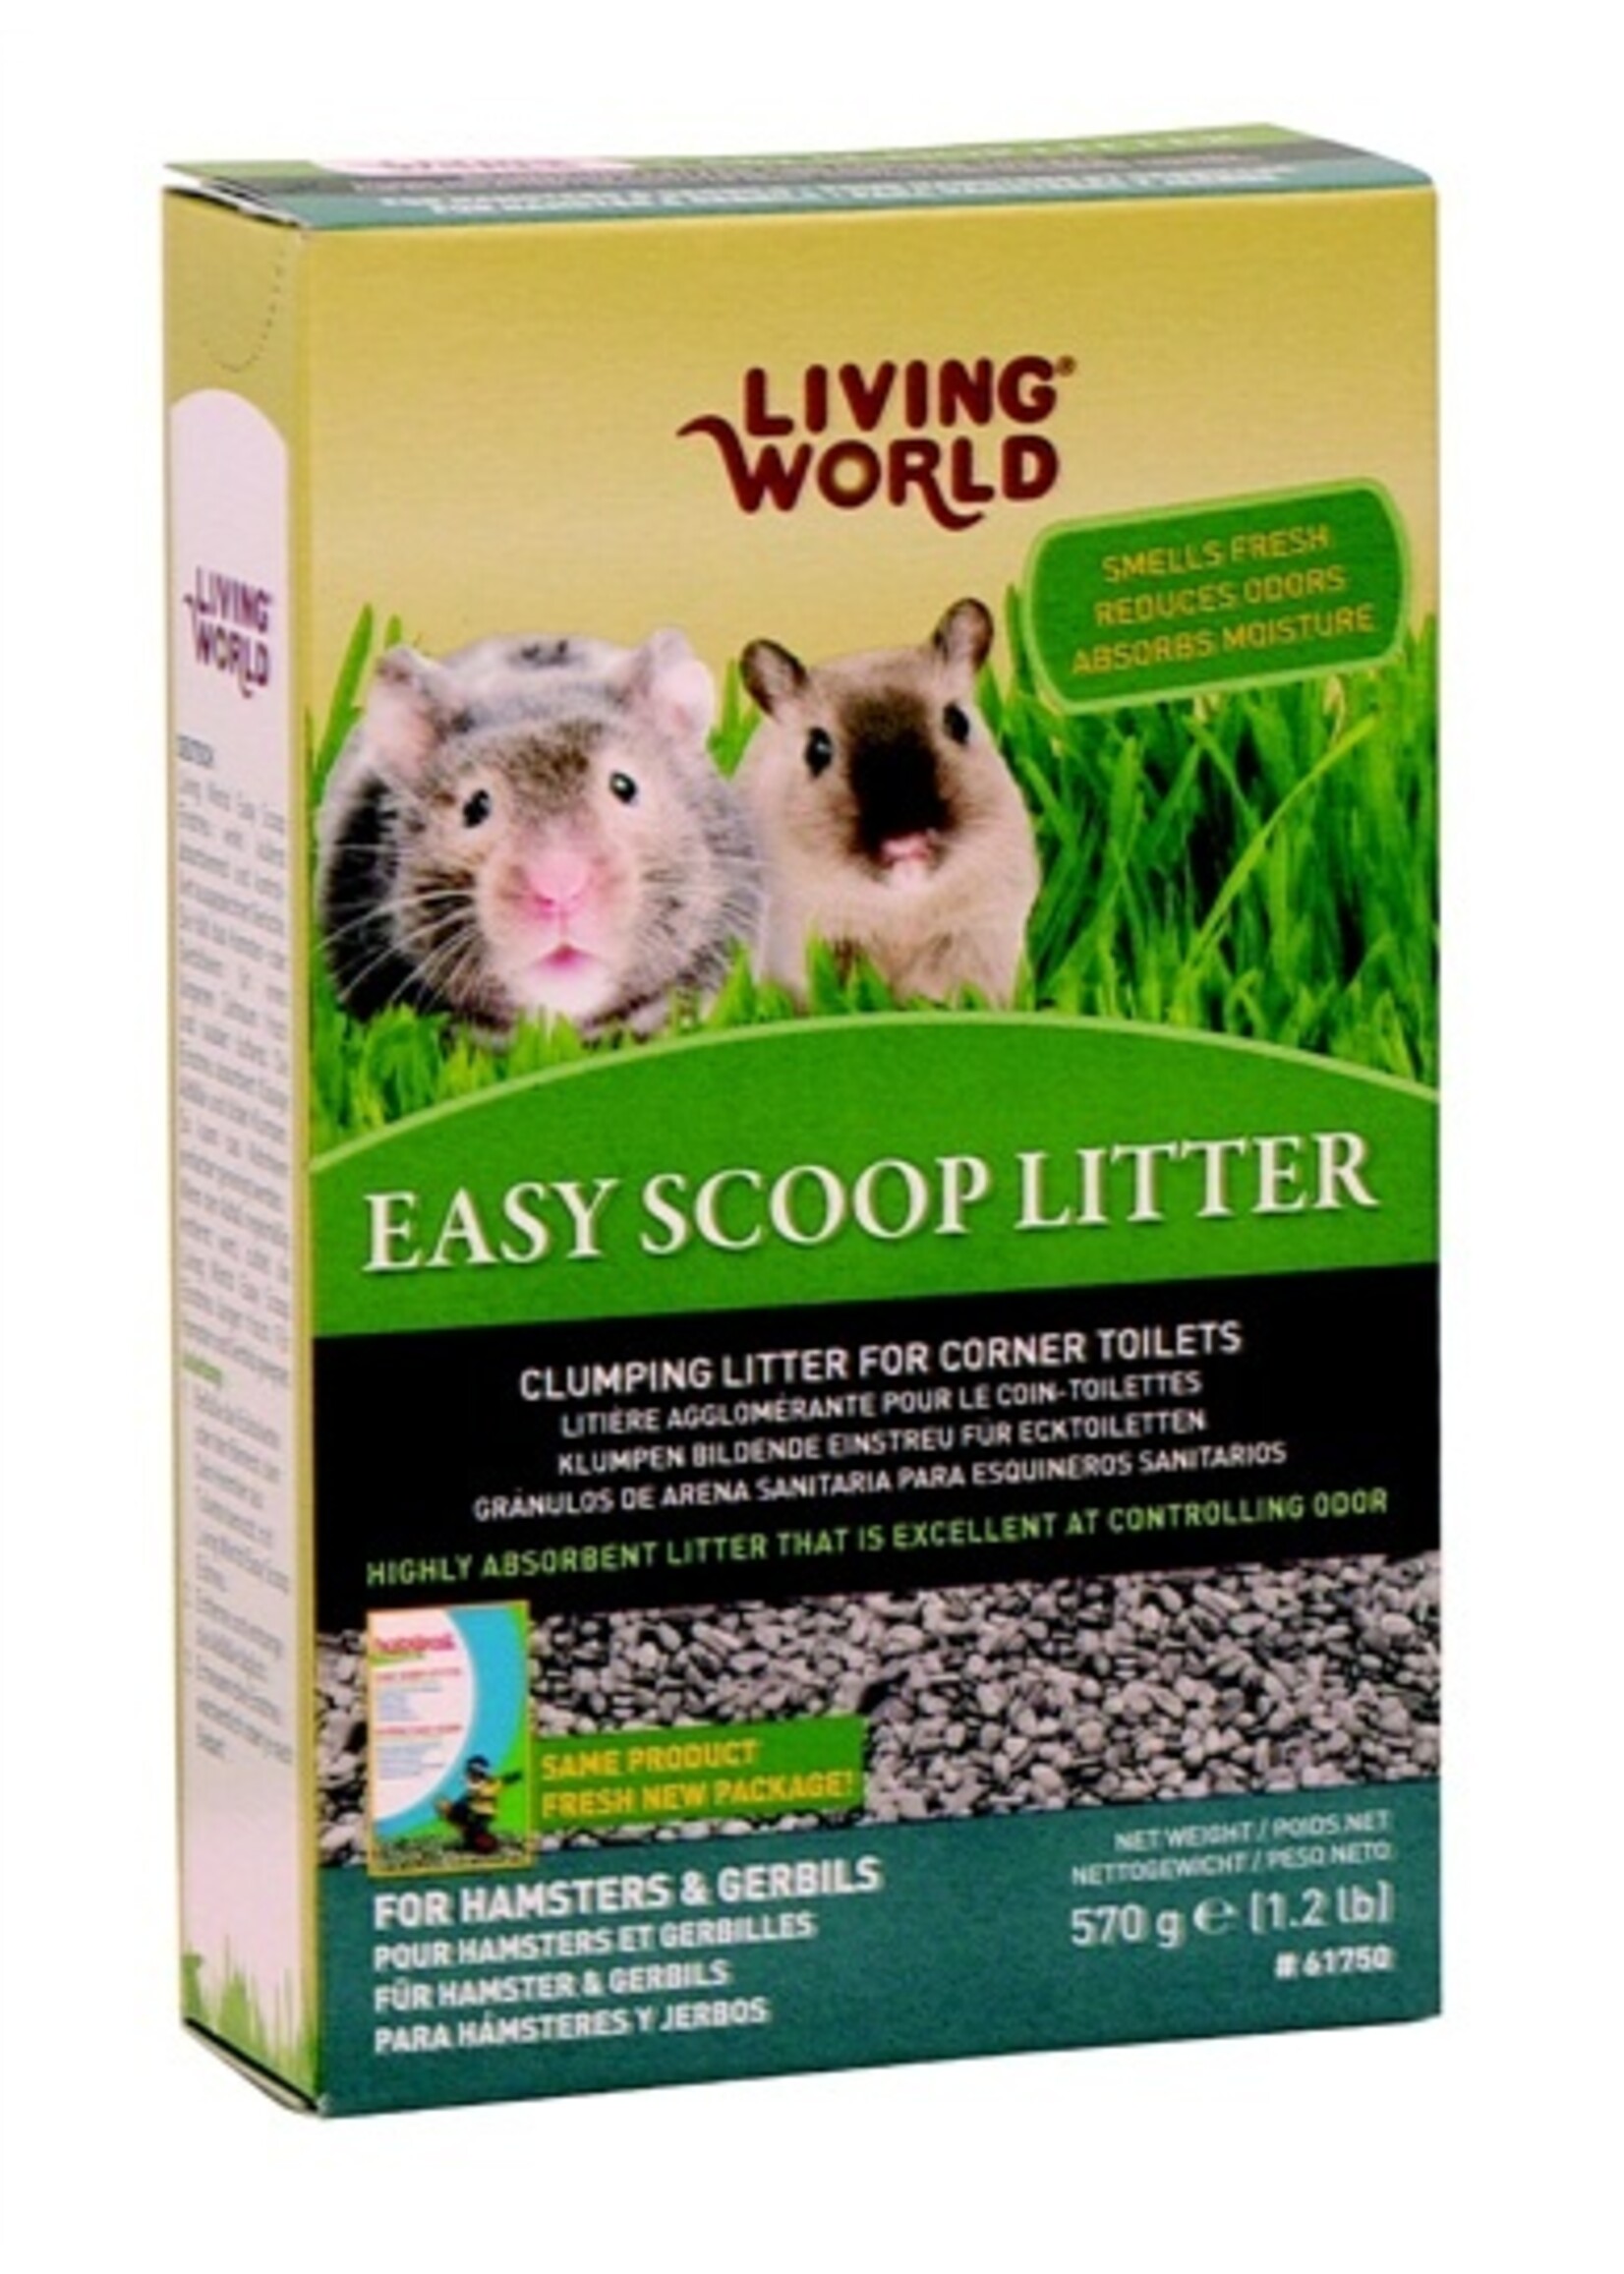 Living World Living World Easy Scoop Litter 1.2lbs